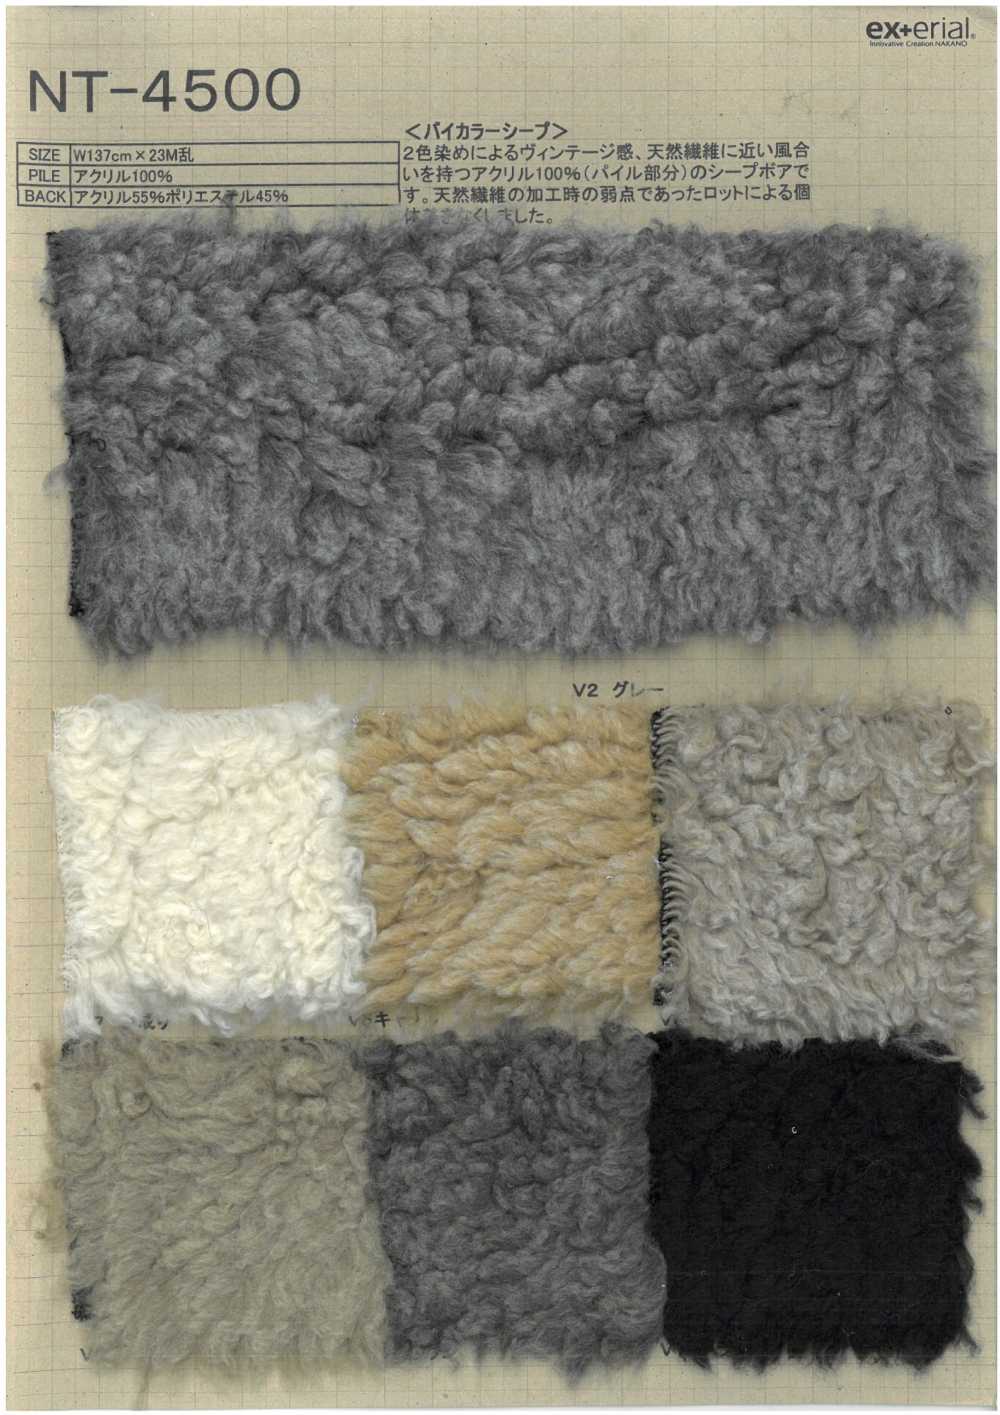 NT-4500 Piel Artesanal [oveja Bicolor][Fabrica Textil] Industria De La Media Nakano